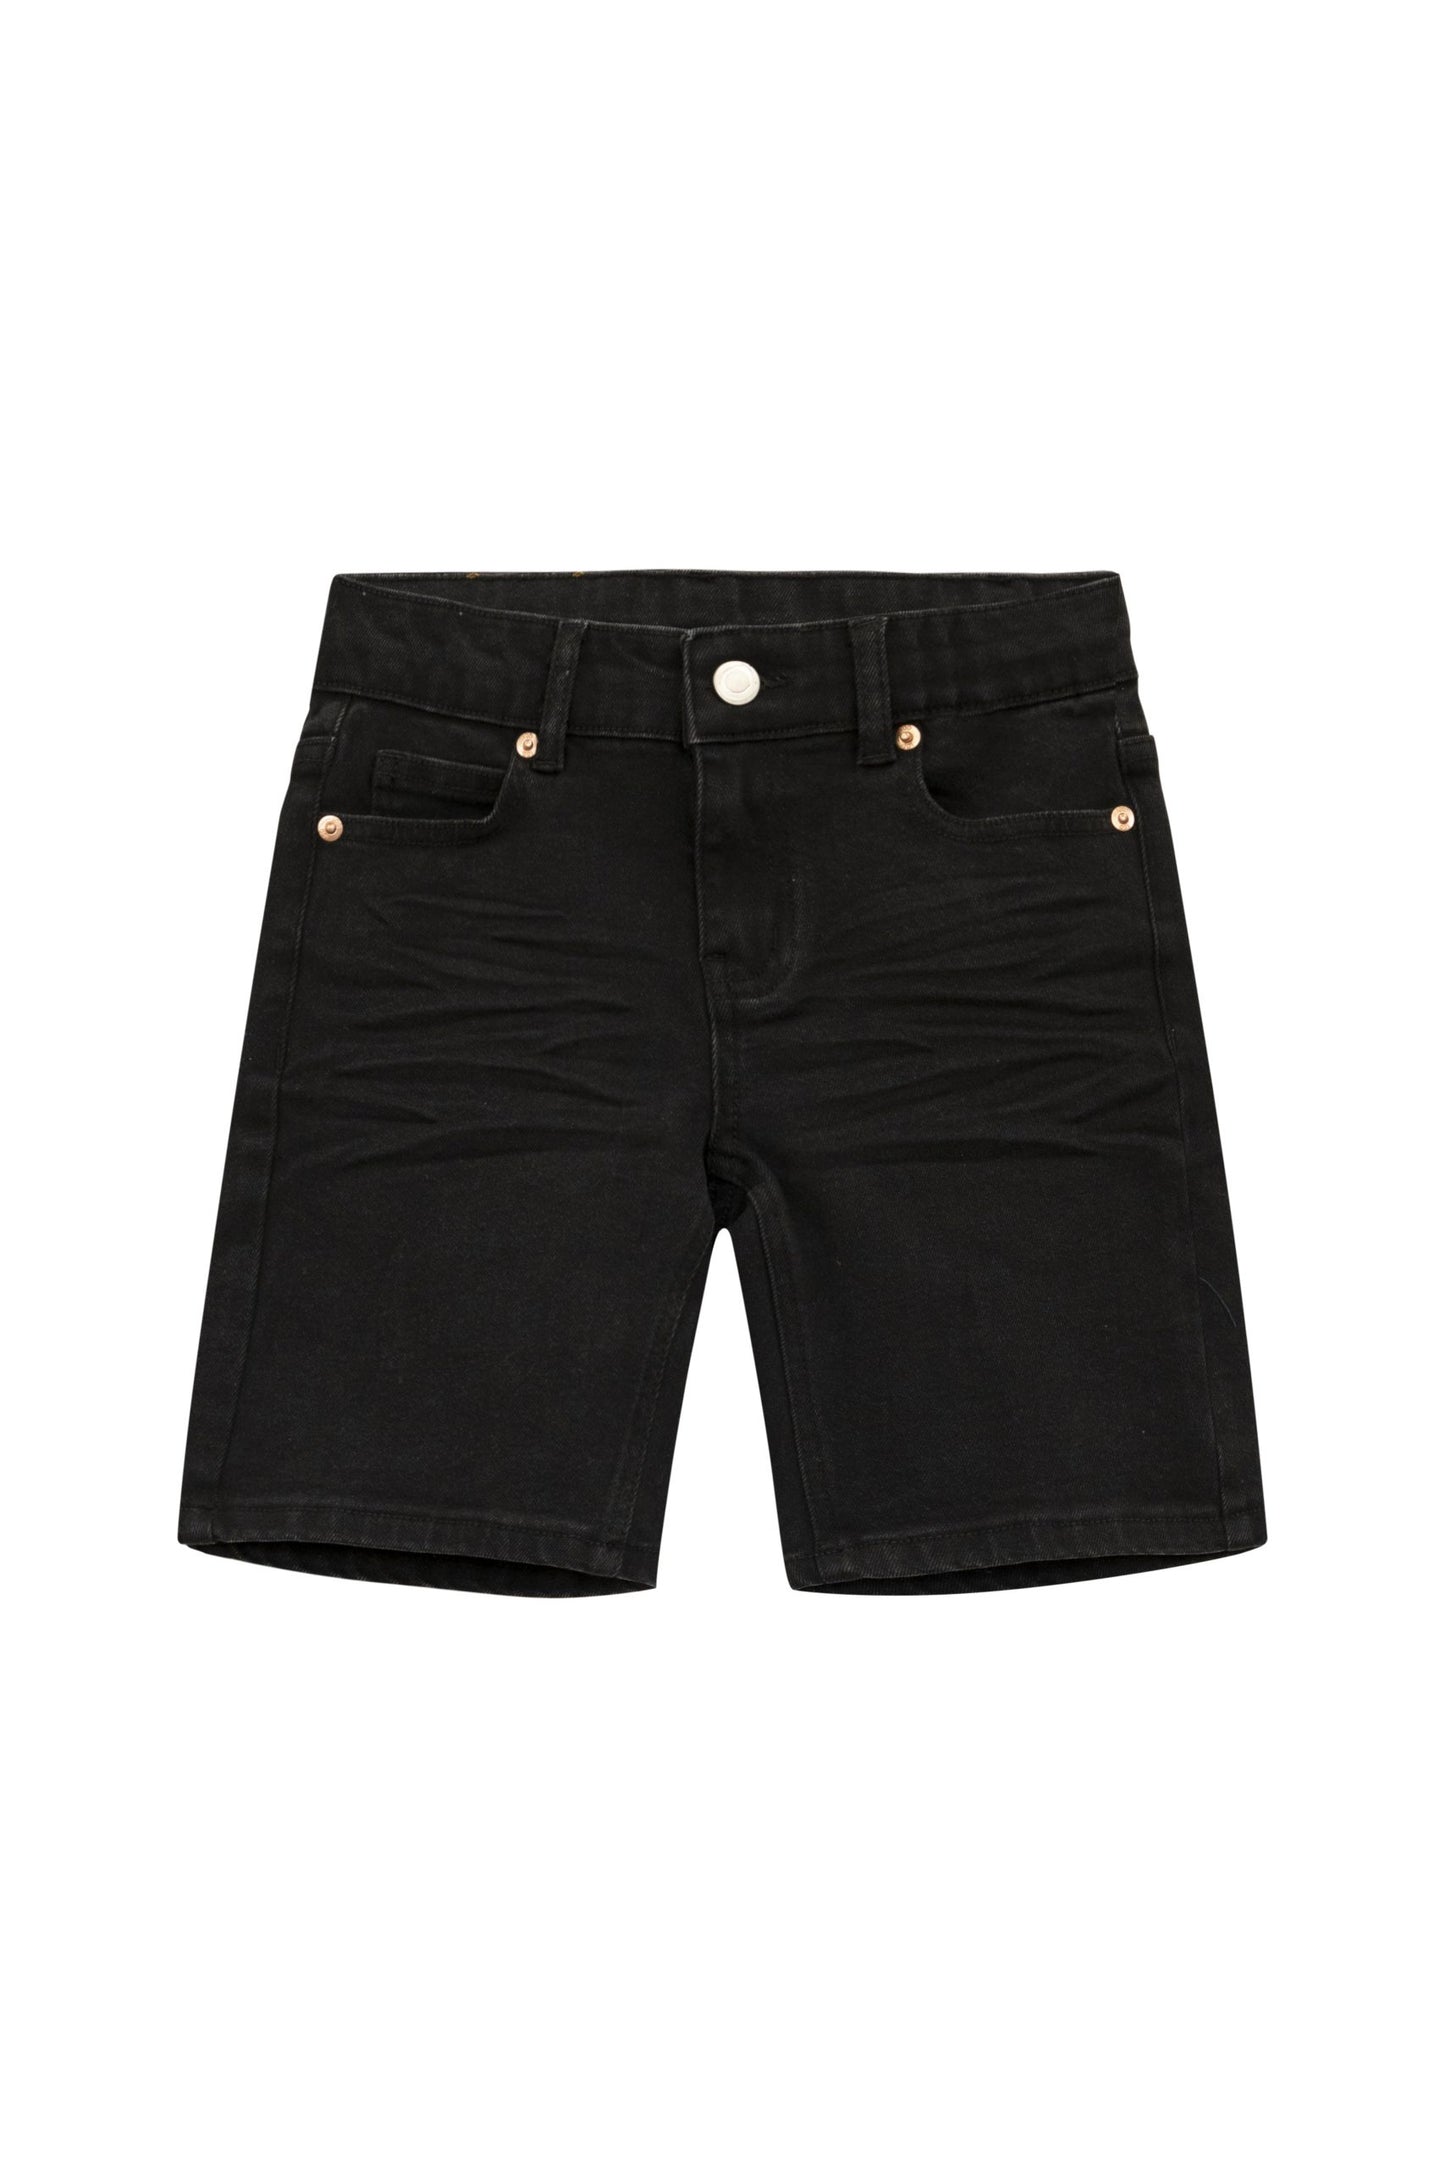 *Denver Denim Shorts Organic - Black